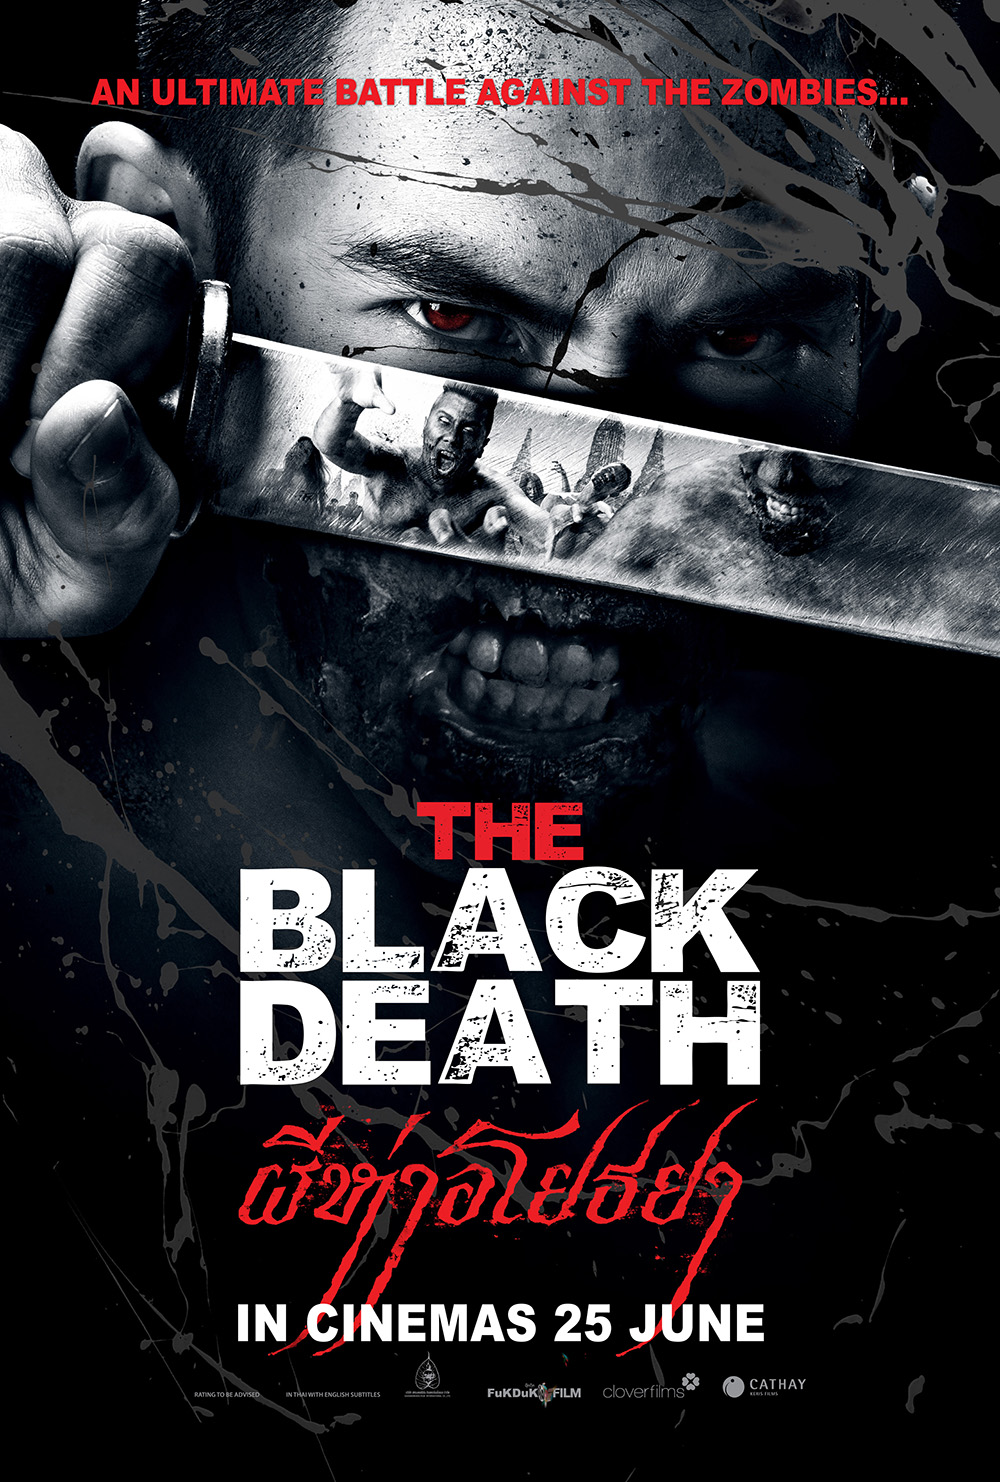 [MINI-HQ] The Black Death (2015) ผีห่าอโยธยา [1080p] [พากย์ไทย 5.1] [หนังไทย] [เสียงไทยมาสเตอร์] [ONE2UP]